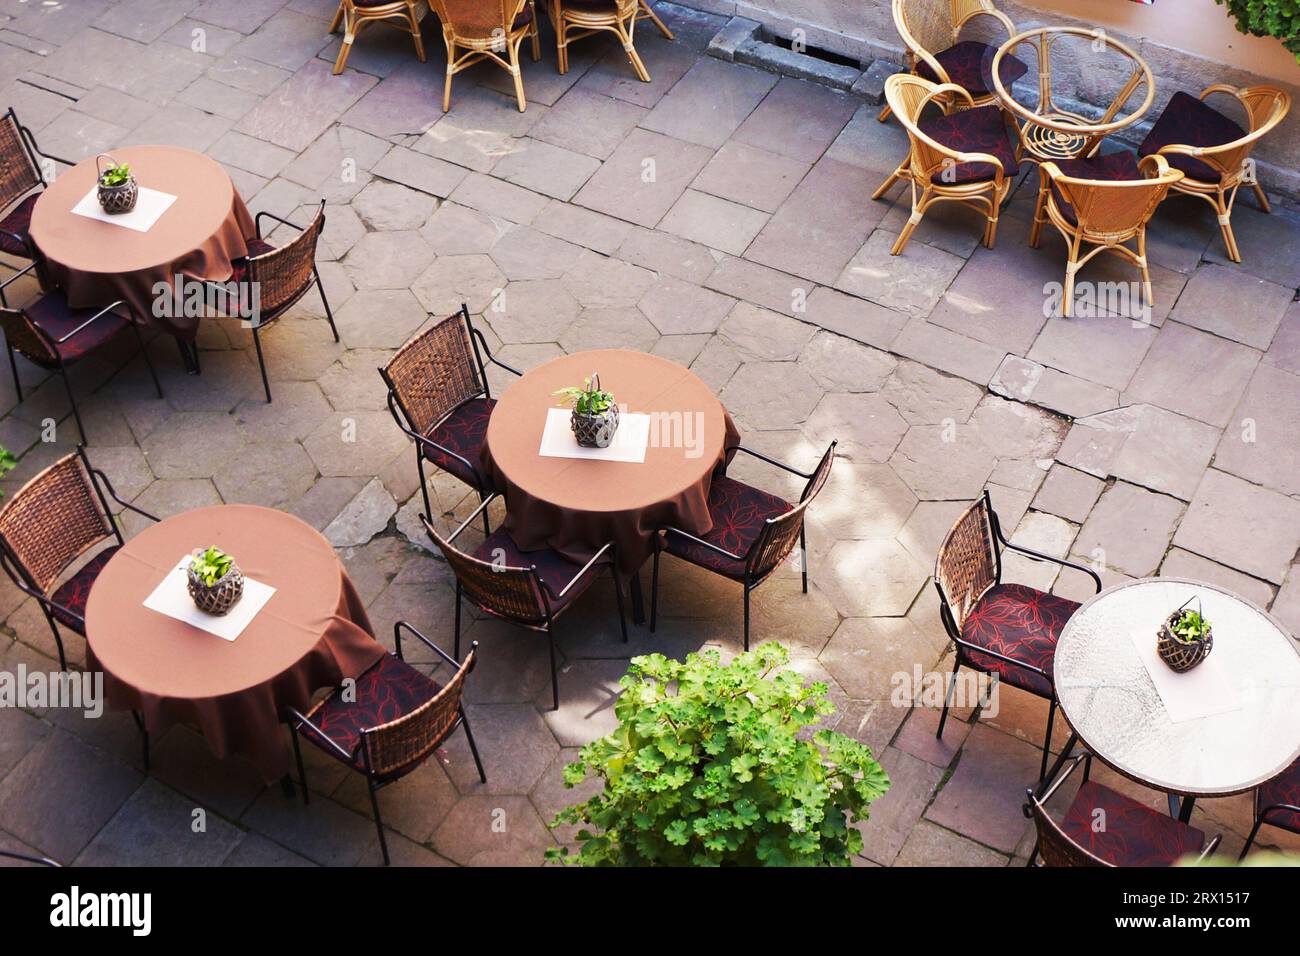 Straßencafe, Tische und Hocker auf der Straße. Restaurant, Cafeteria. Draufsicht. Leer, keine Leute Stockfoto